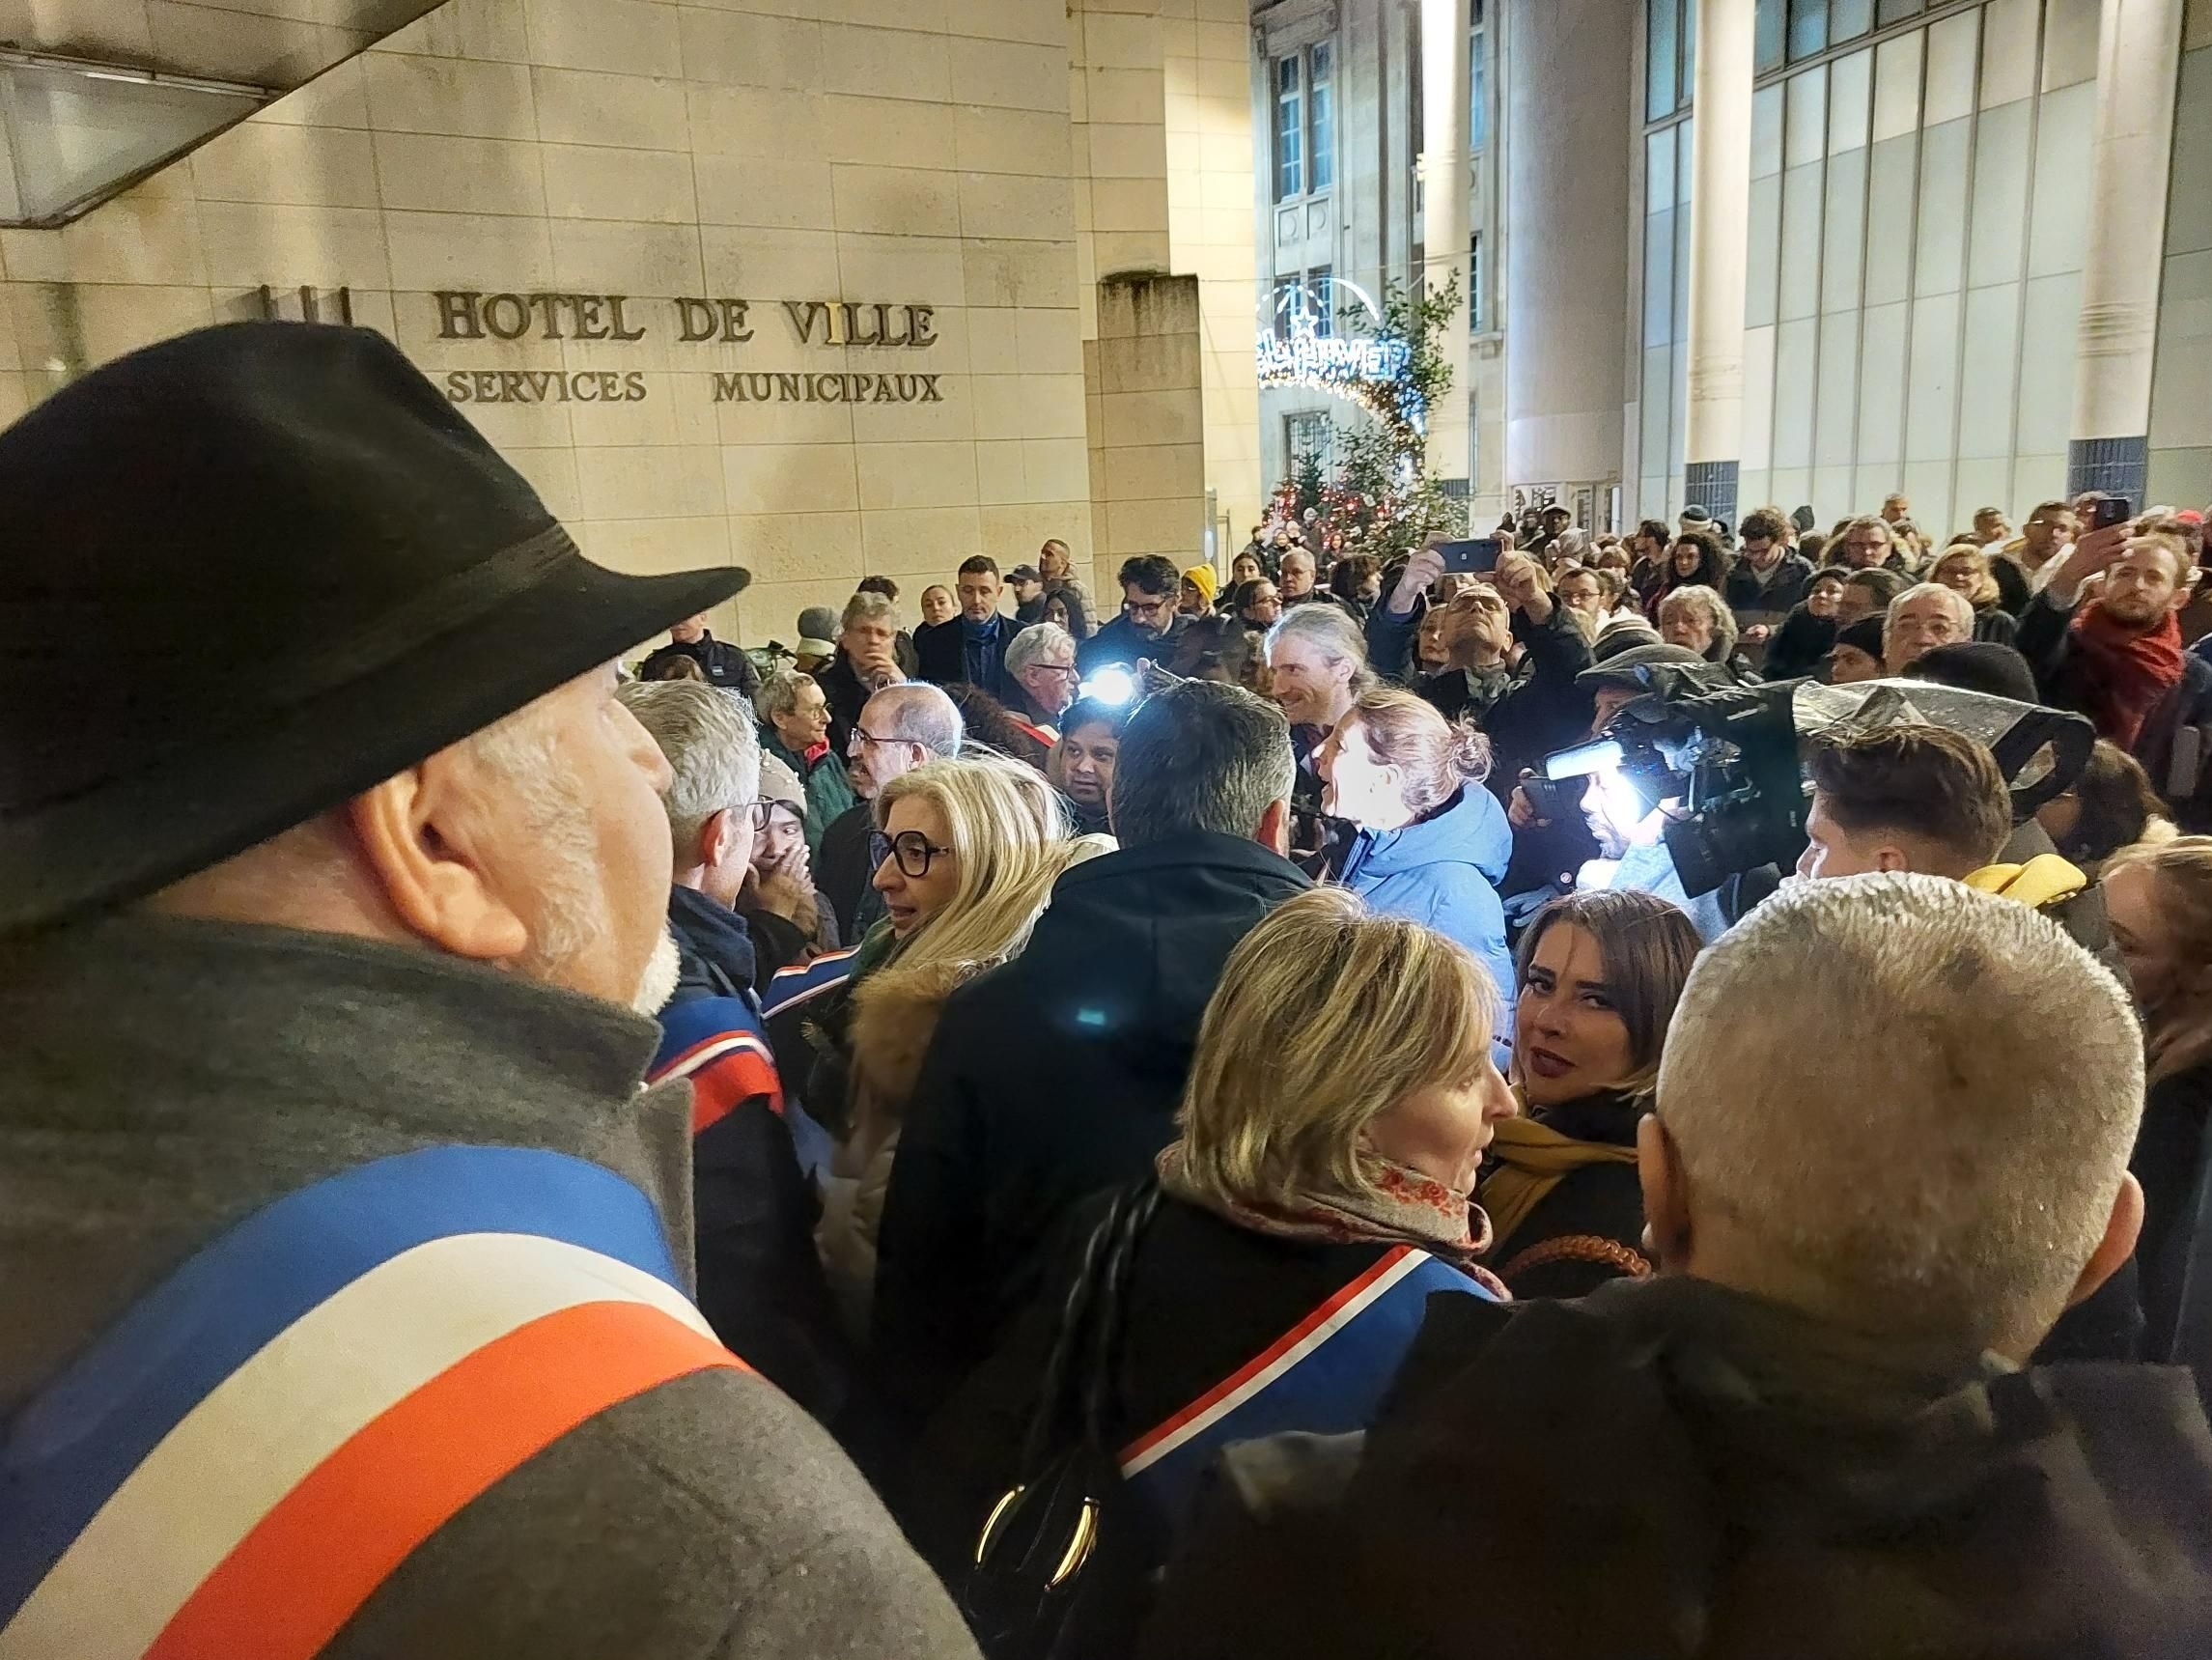 Un rassemblement de soutien à Oriane Filhol avait réuni plus de 300 personnes à Saint-Denis, vendredi 22 décembre, deux jours après son agression. LP/Nathalie Revenu